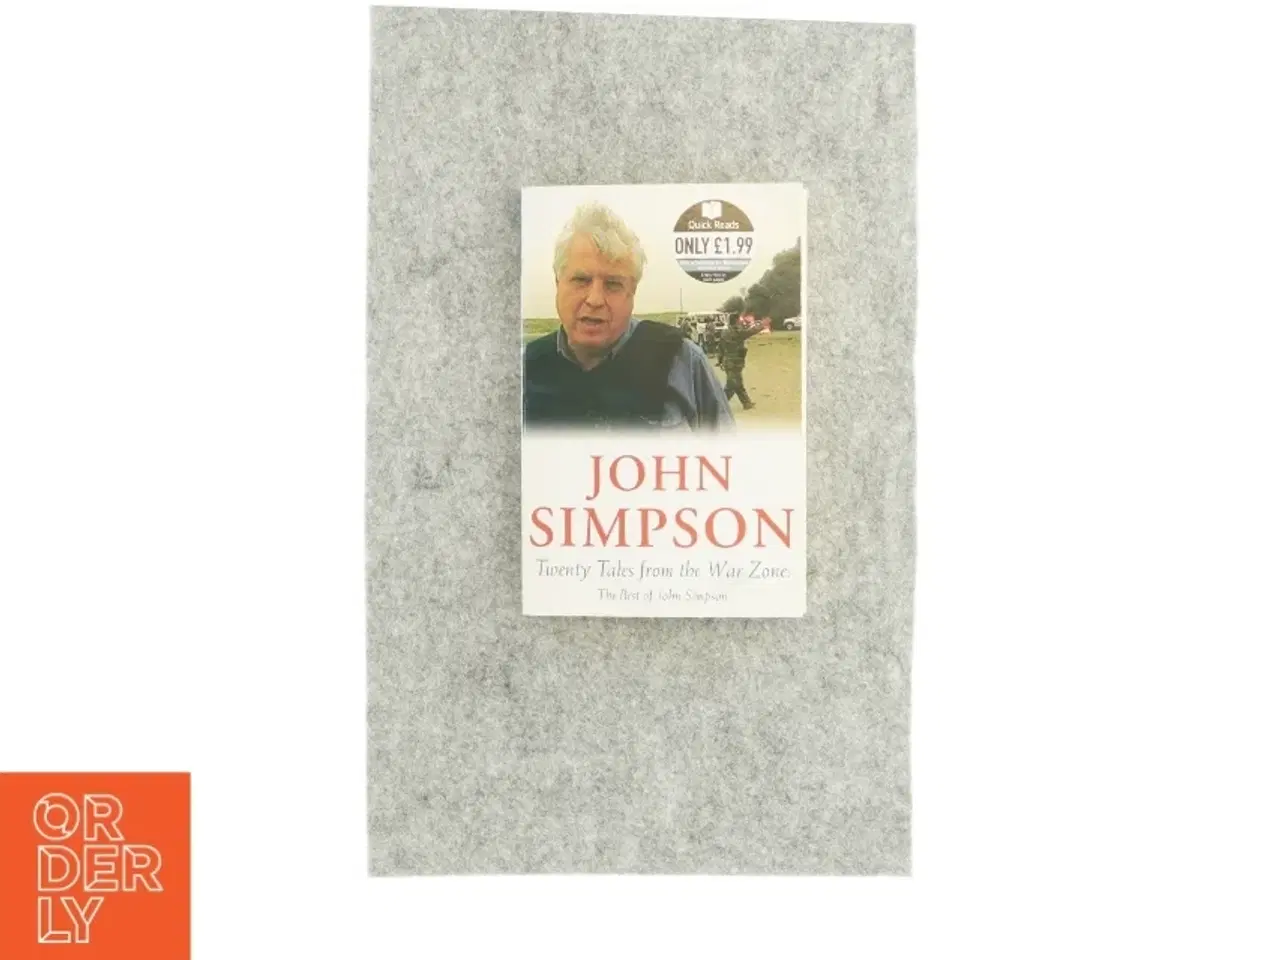 Billede 1 - Twenty tales from the war zone af john simpson (bog)